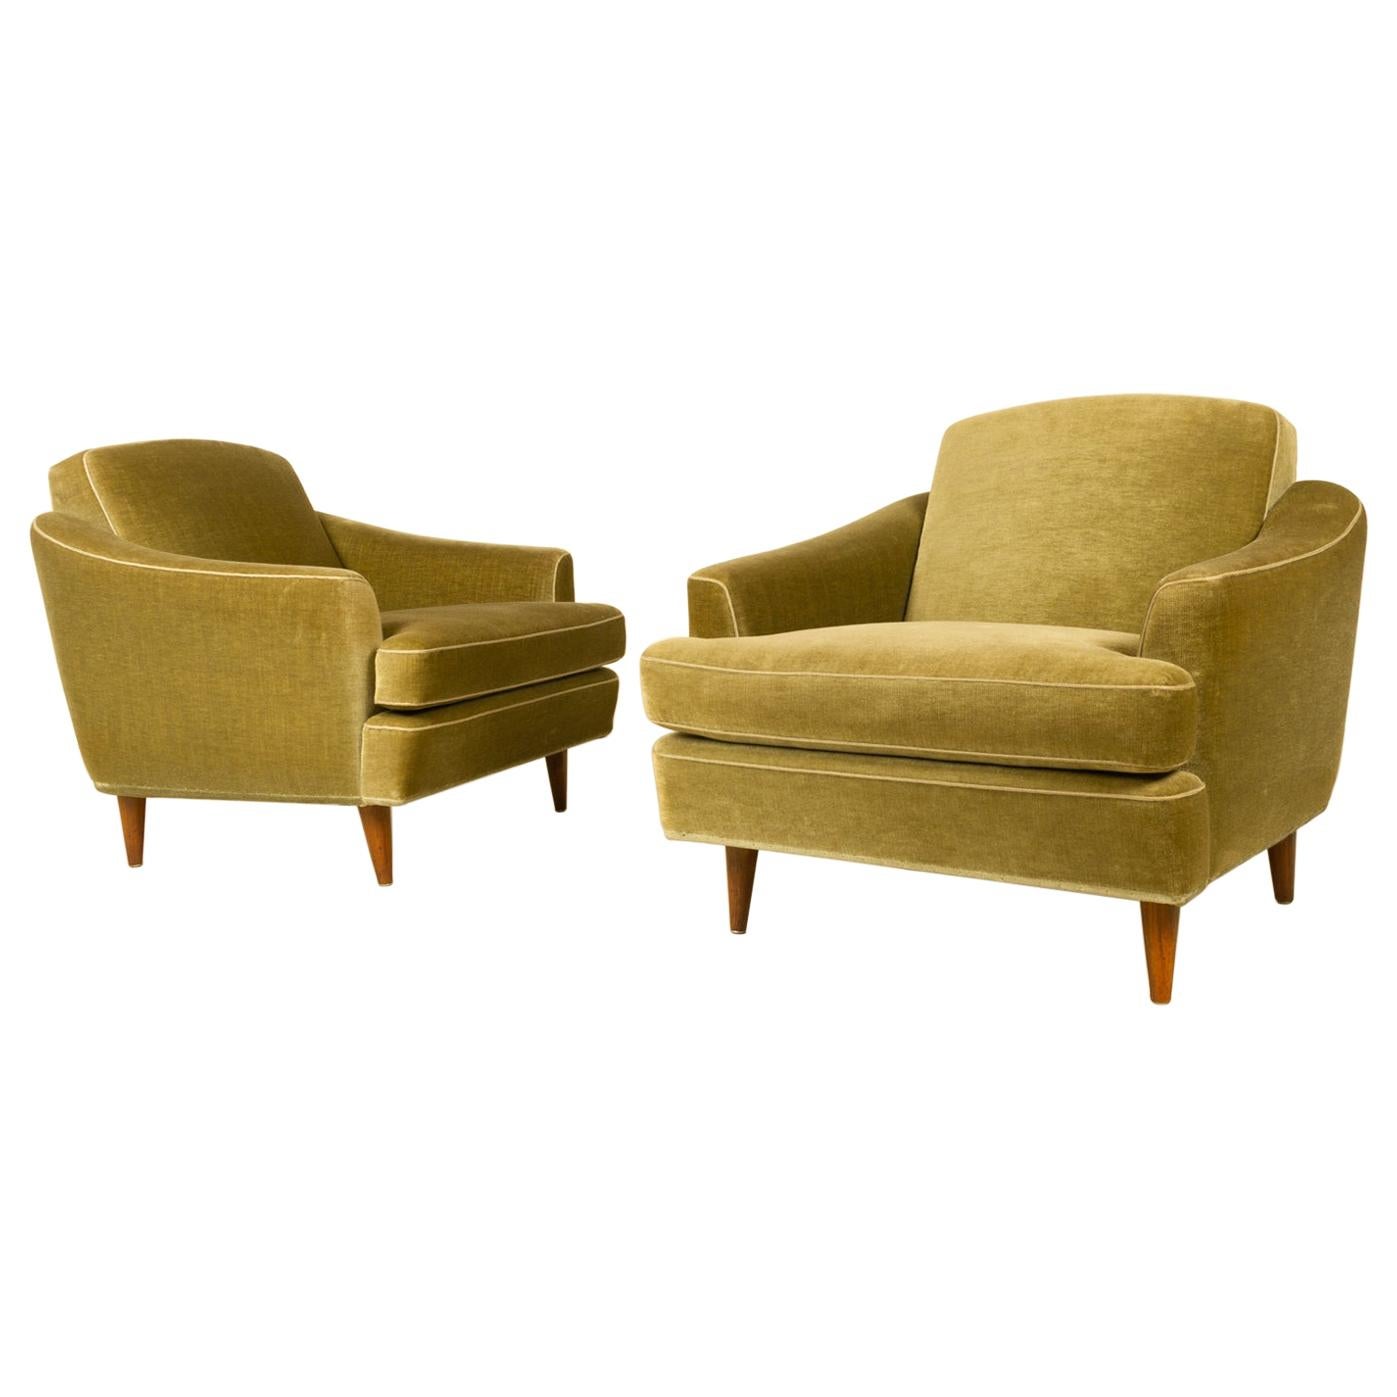 Pair of Danish Modern Green Velvet Lounge Chairs, 1950s